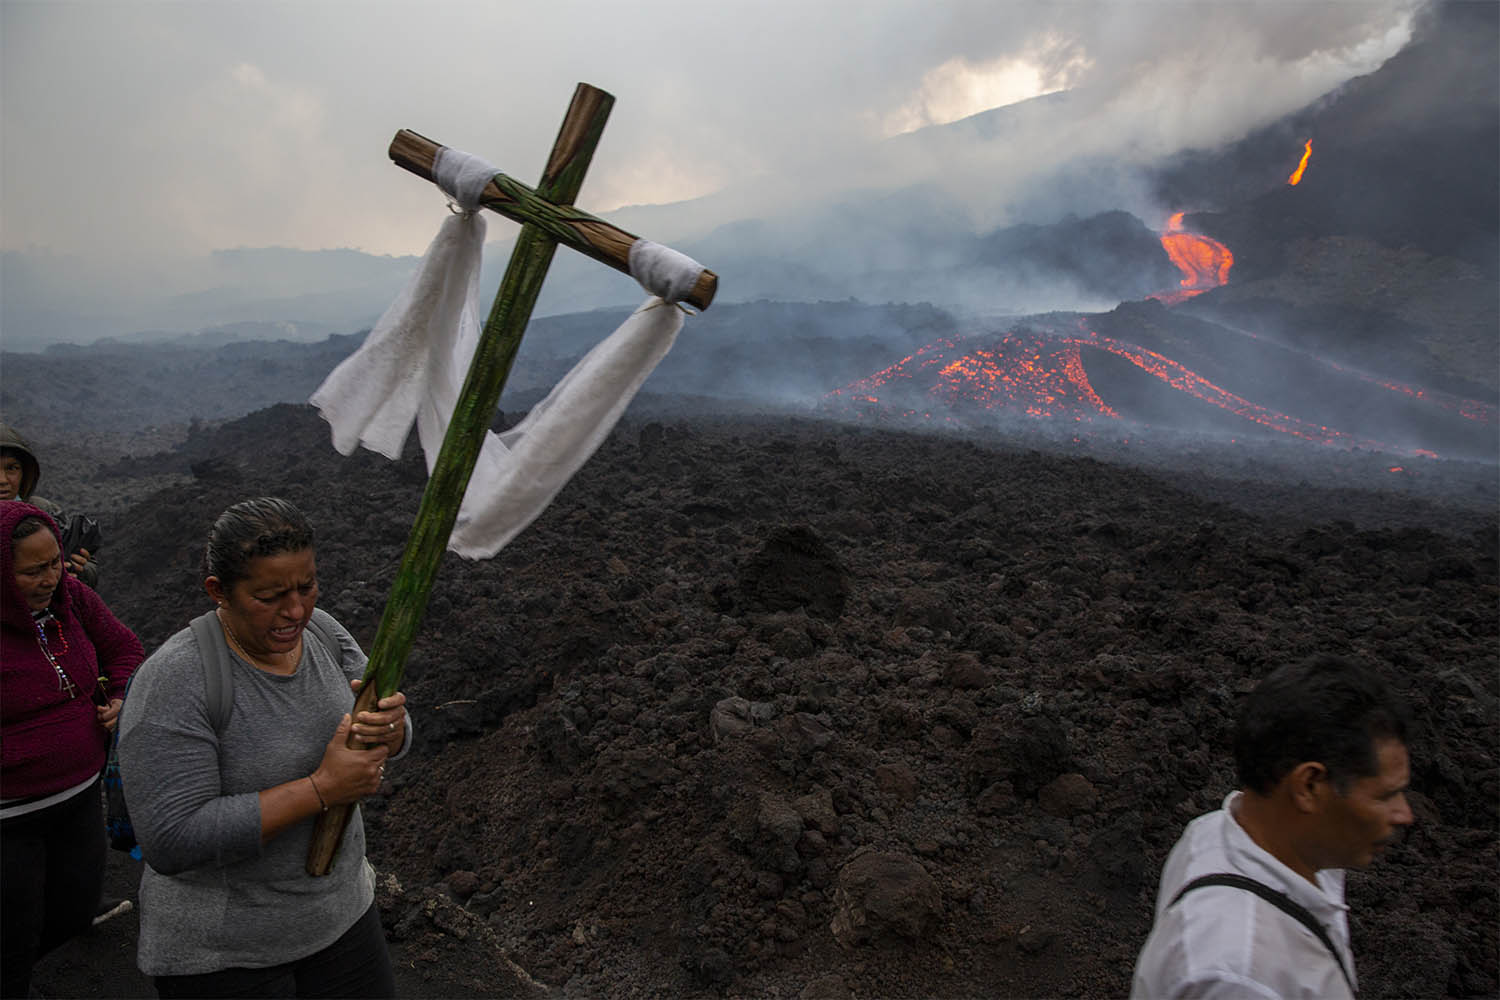 אישה נושאת צלב במהלך עלייה לרגל לתפילה להפסקת פעילותו של הר הגעש פאקאיה, בסן ויסנטה פאקאיה, גואטמלה. הר הגעש, 50 קילומטרים מדרום לבירת גואטמלה, הפך לפעיל בתחילת השנה. 5 במאי 2021 (צילום: AP Photo/Moises Castillo)